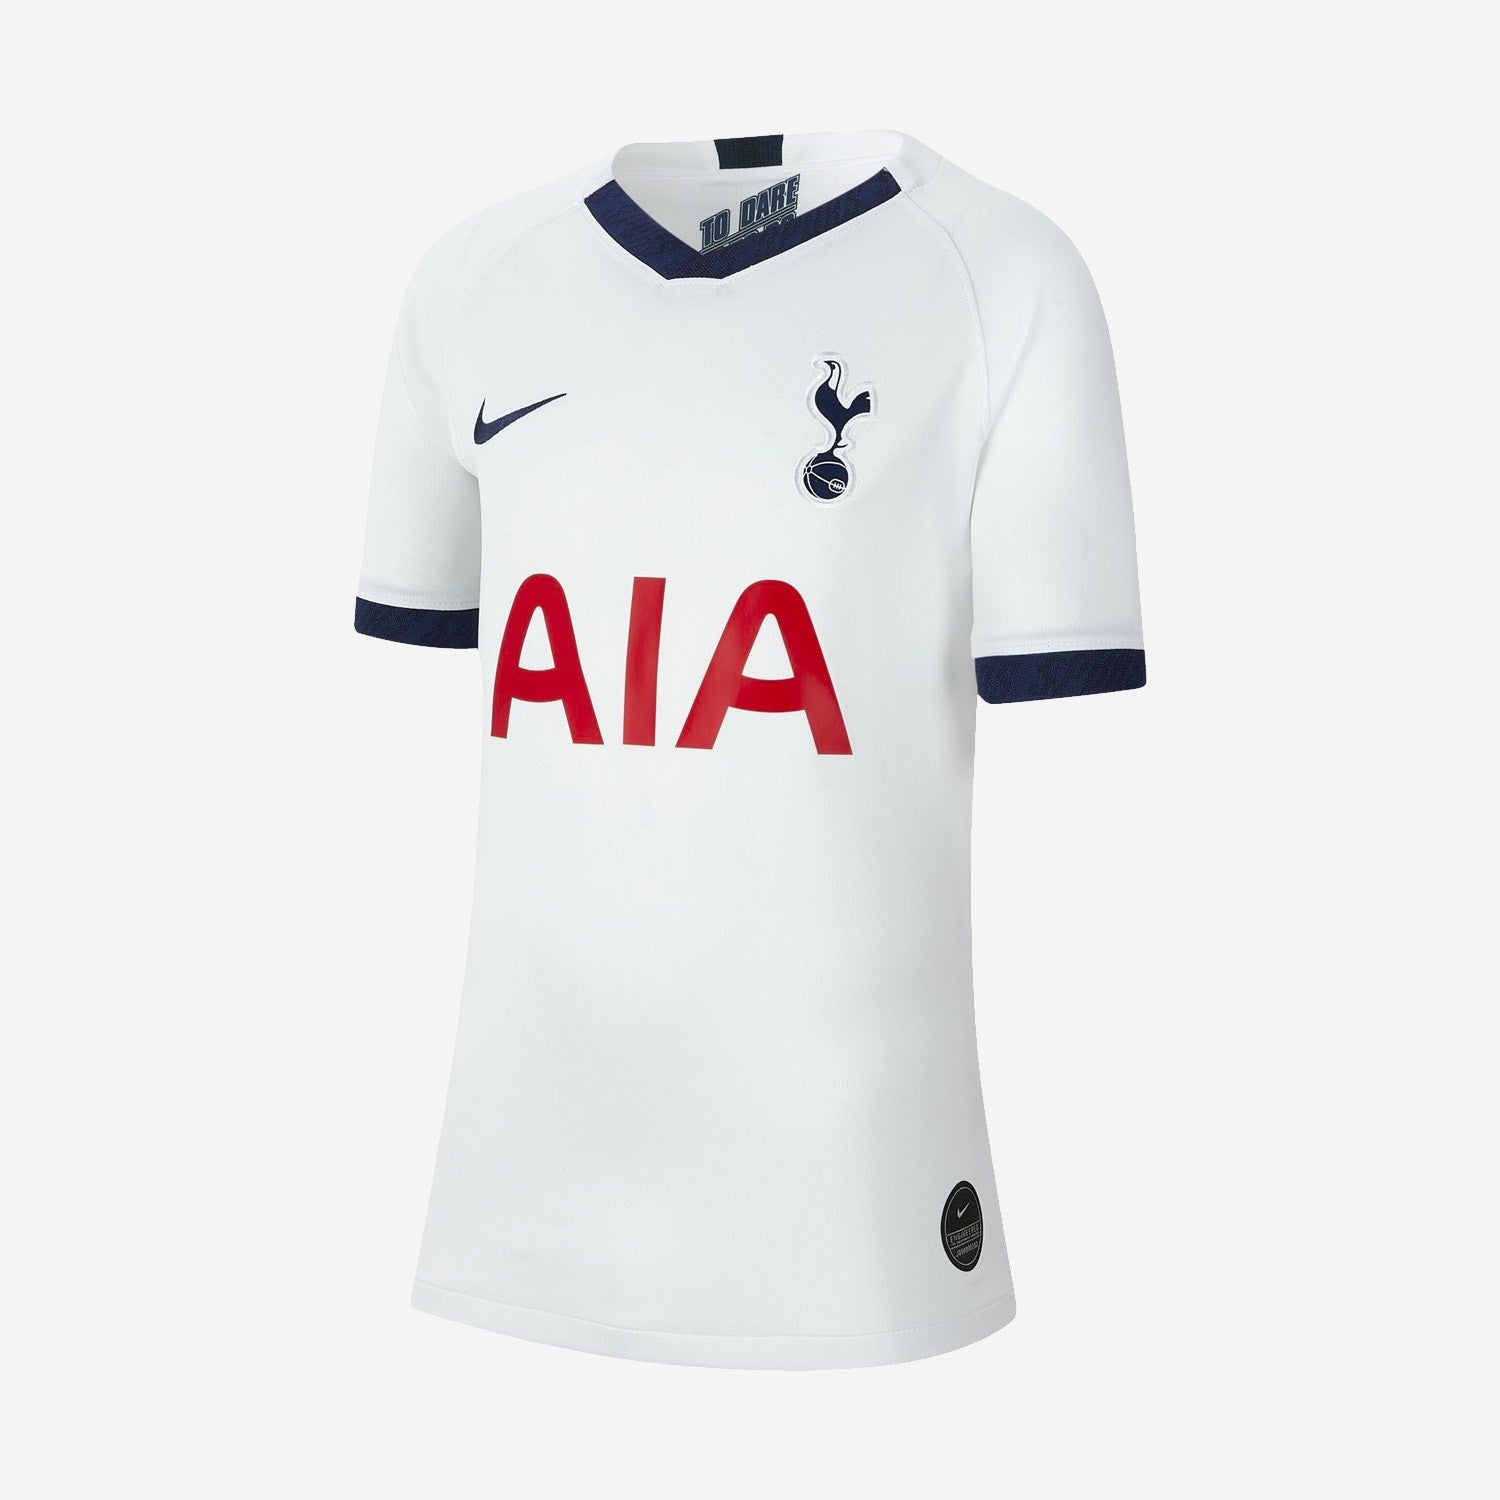 Tottenham Hotspur 19-20 Goalkeeper Kit Released